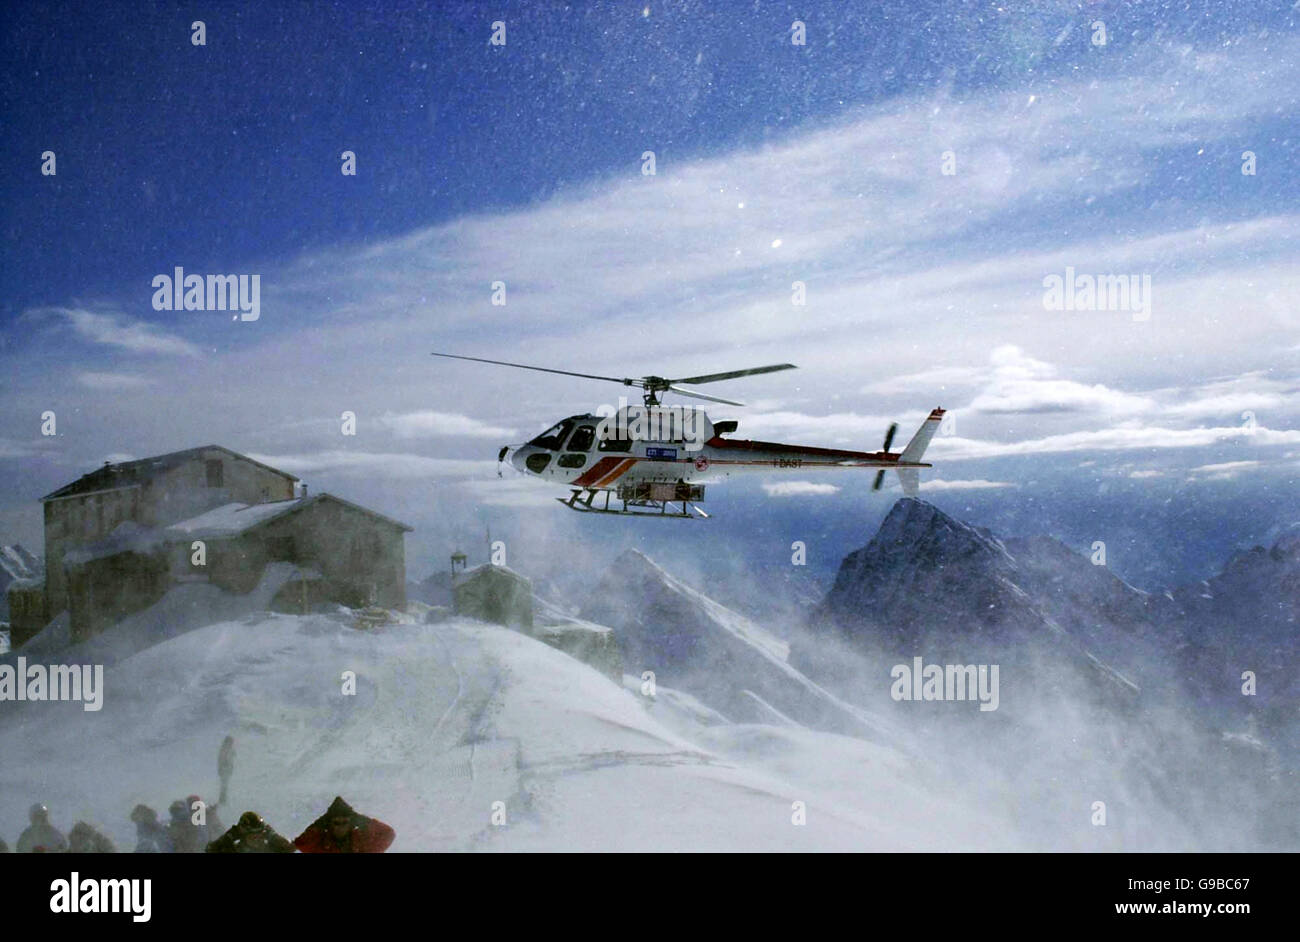 Les skieurs qui attendent l'héli-ski d'un avion Eurocopter AS-350B-3 Ecureuil, détournent leur tête du blizzard de neige causé par les pales de l'hélicoptère, à Alagna, dans le nord de l'Italie. Banque D'Images